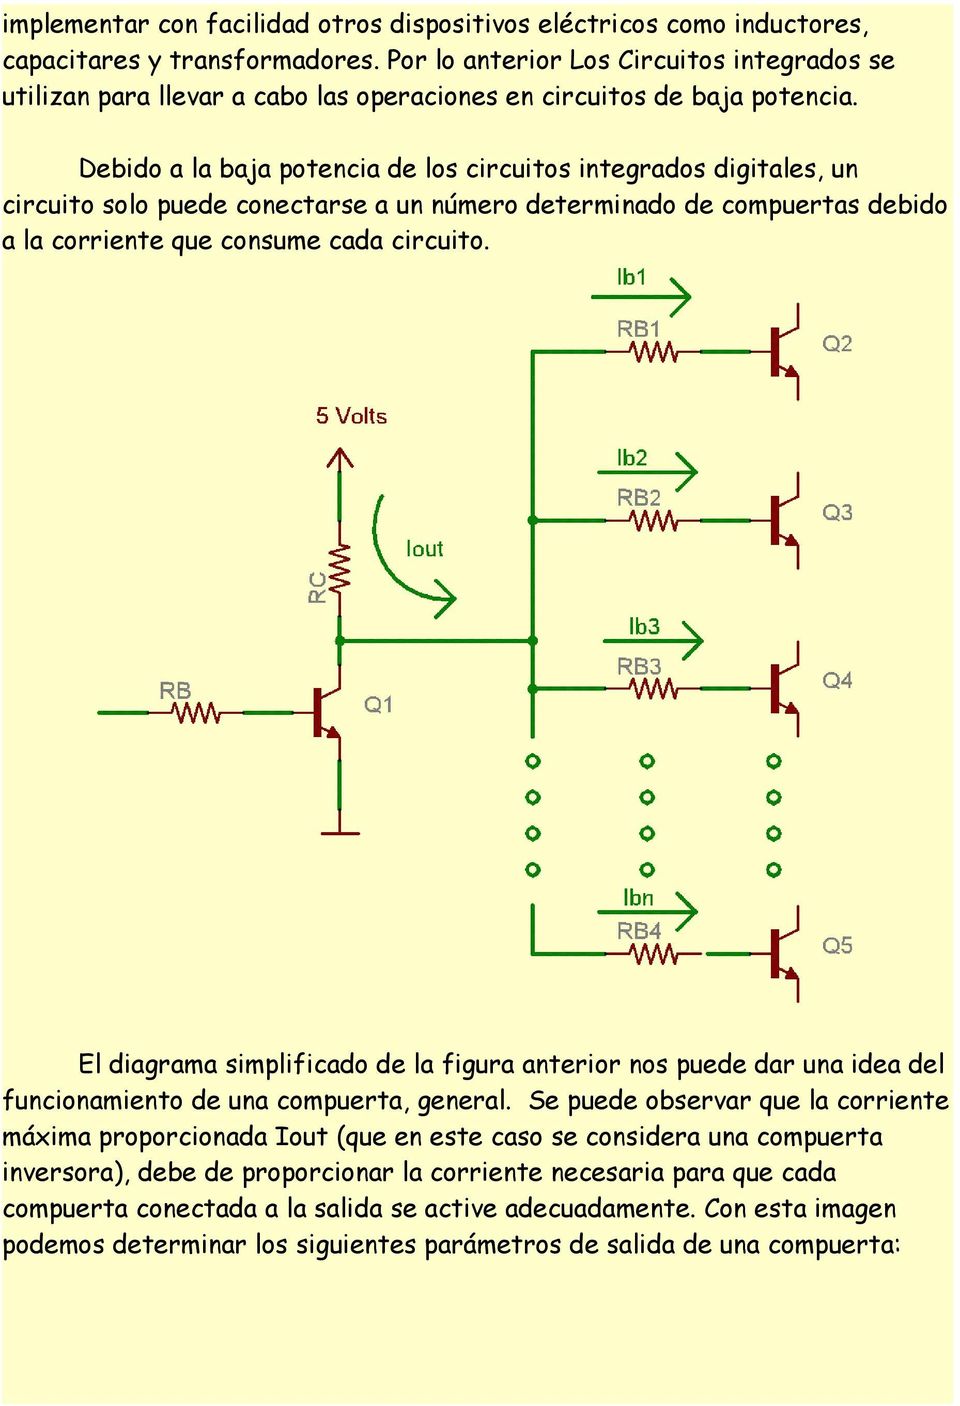 Debido a la baja potencia de los circuitos integrados digitales, un circuito solo puede conectarse a un número determinado de compuertas debido a la corriente que consume cada circuito.